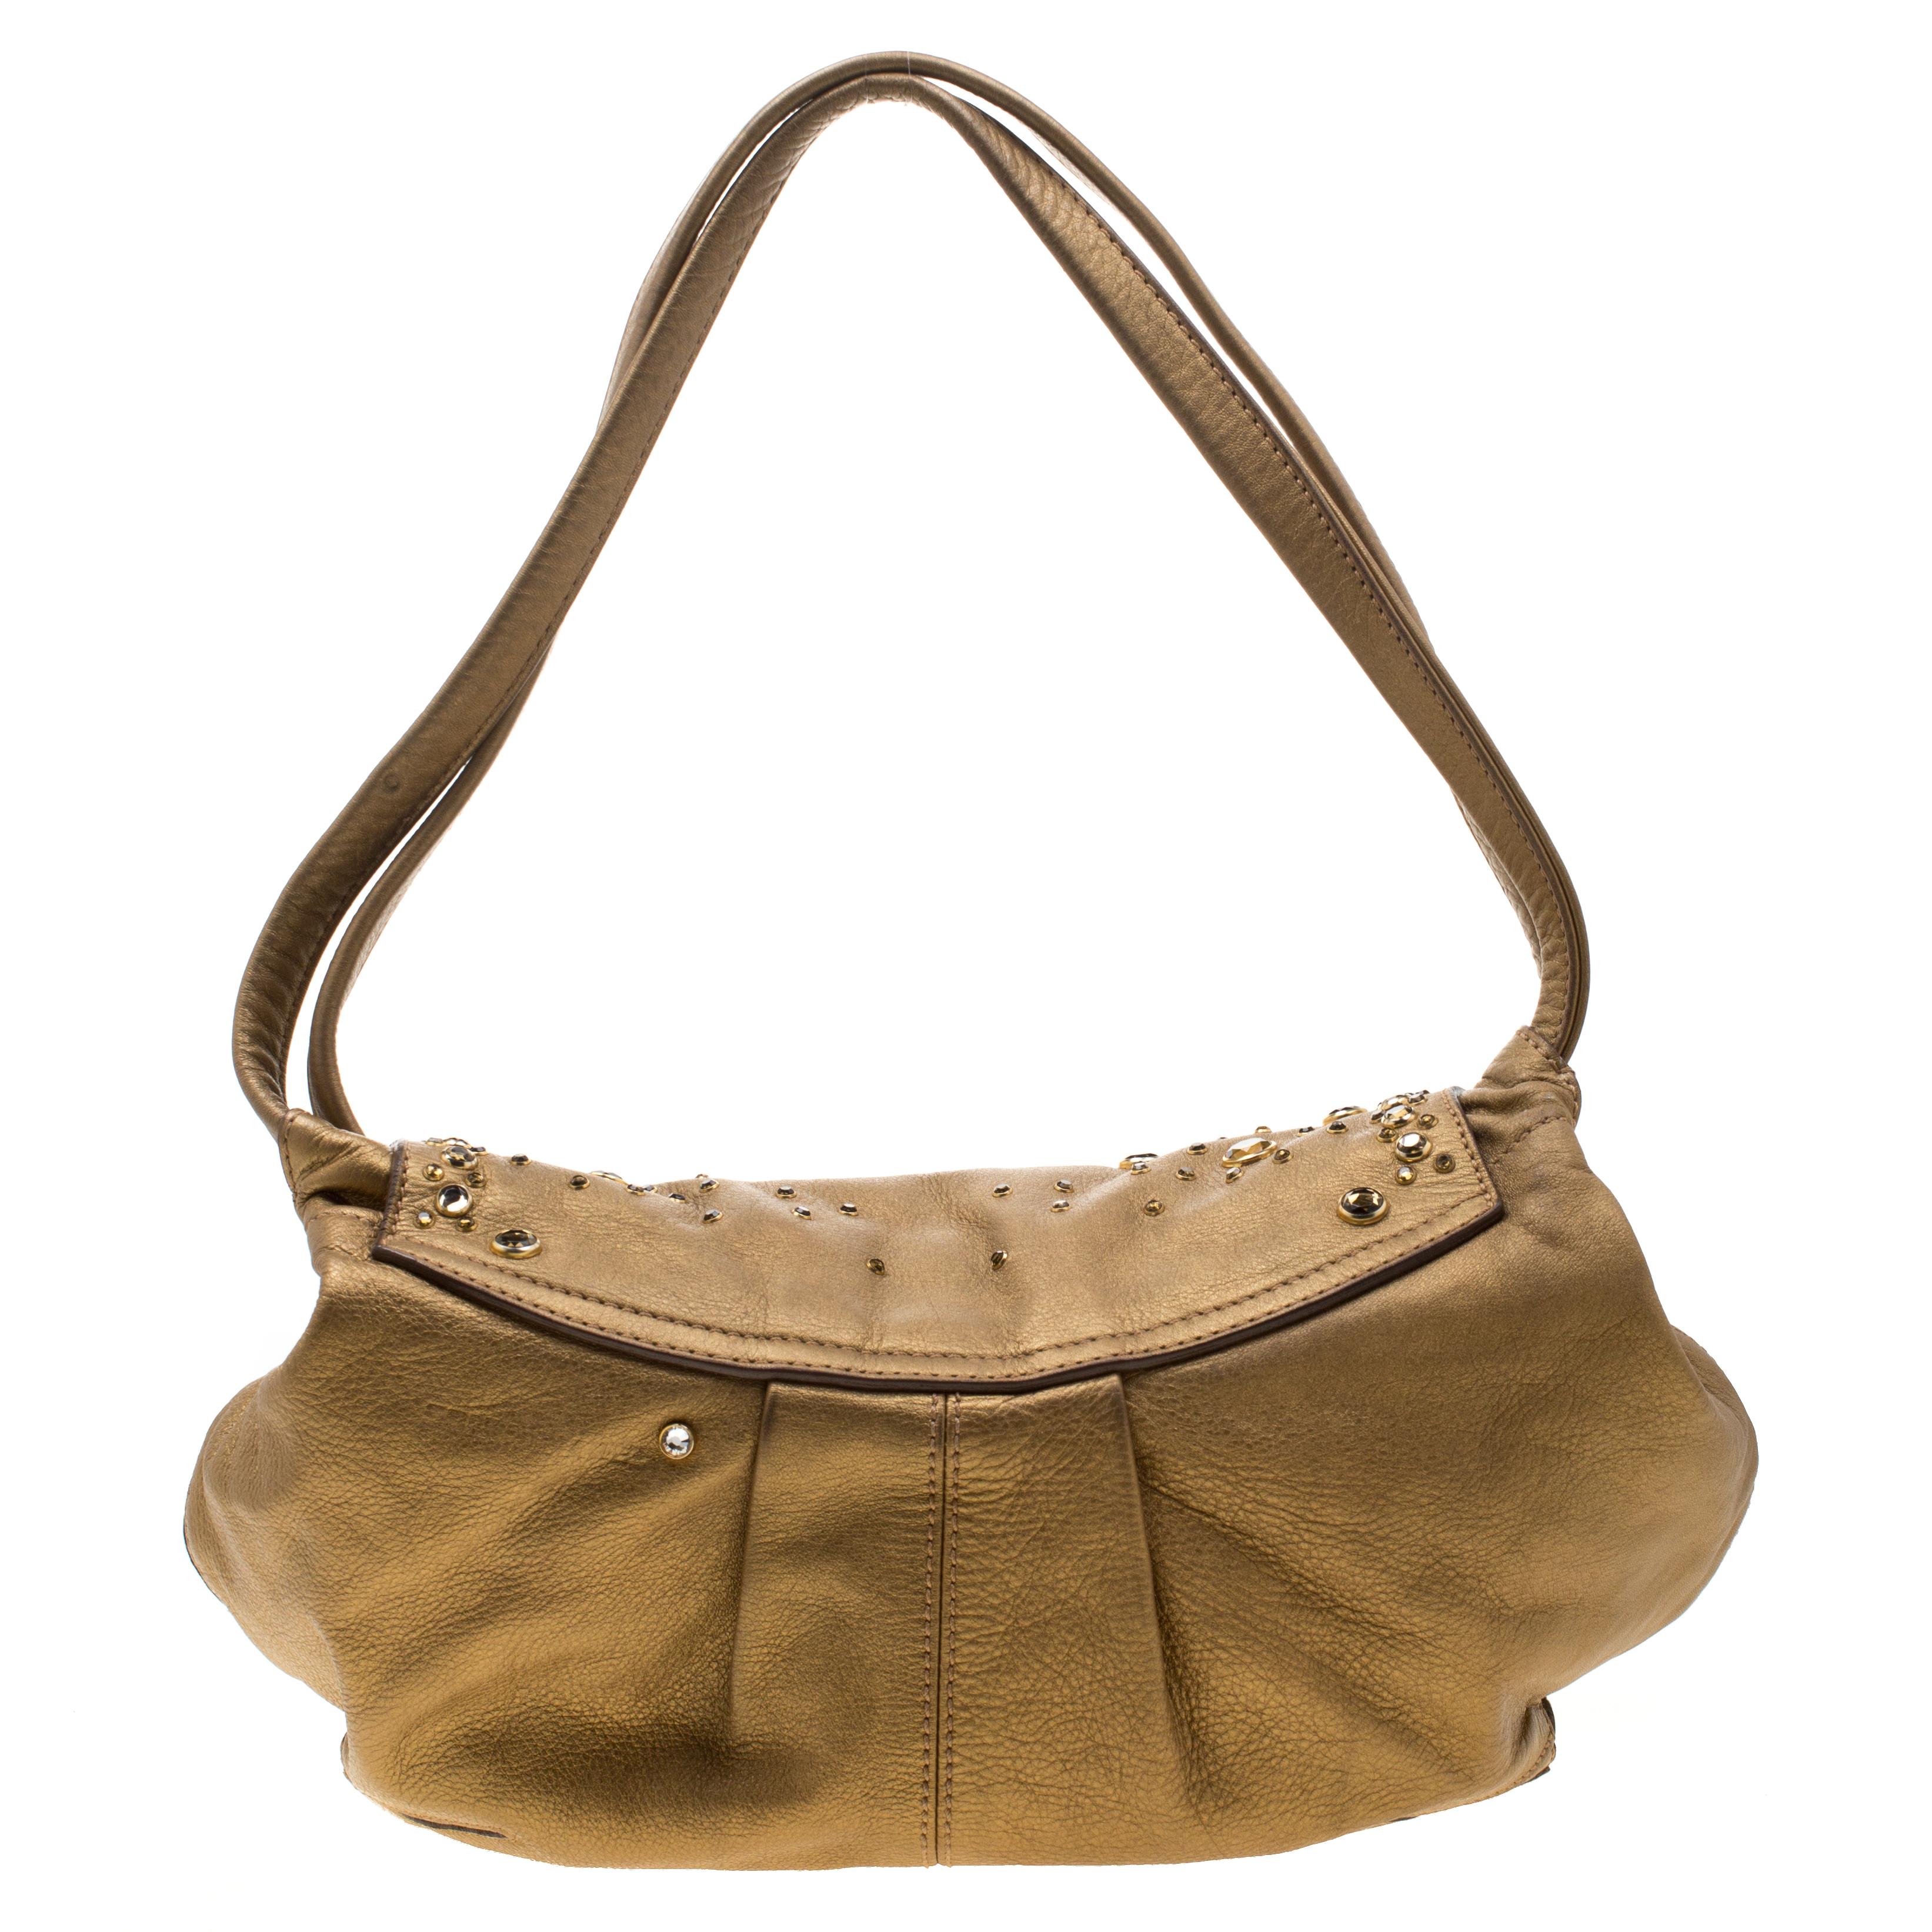 Ce sac chic et féminin en beige est de Sonia Rykiel. Le sac est fabriqué en cuir doré métallisé et comporte un rabat clouté qui s'ouvre sur un intérieur doublé de tissu, dimensionné pour accueillir vos objets quotidiens. Le sac est équipé de